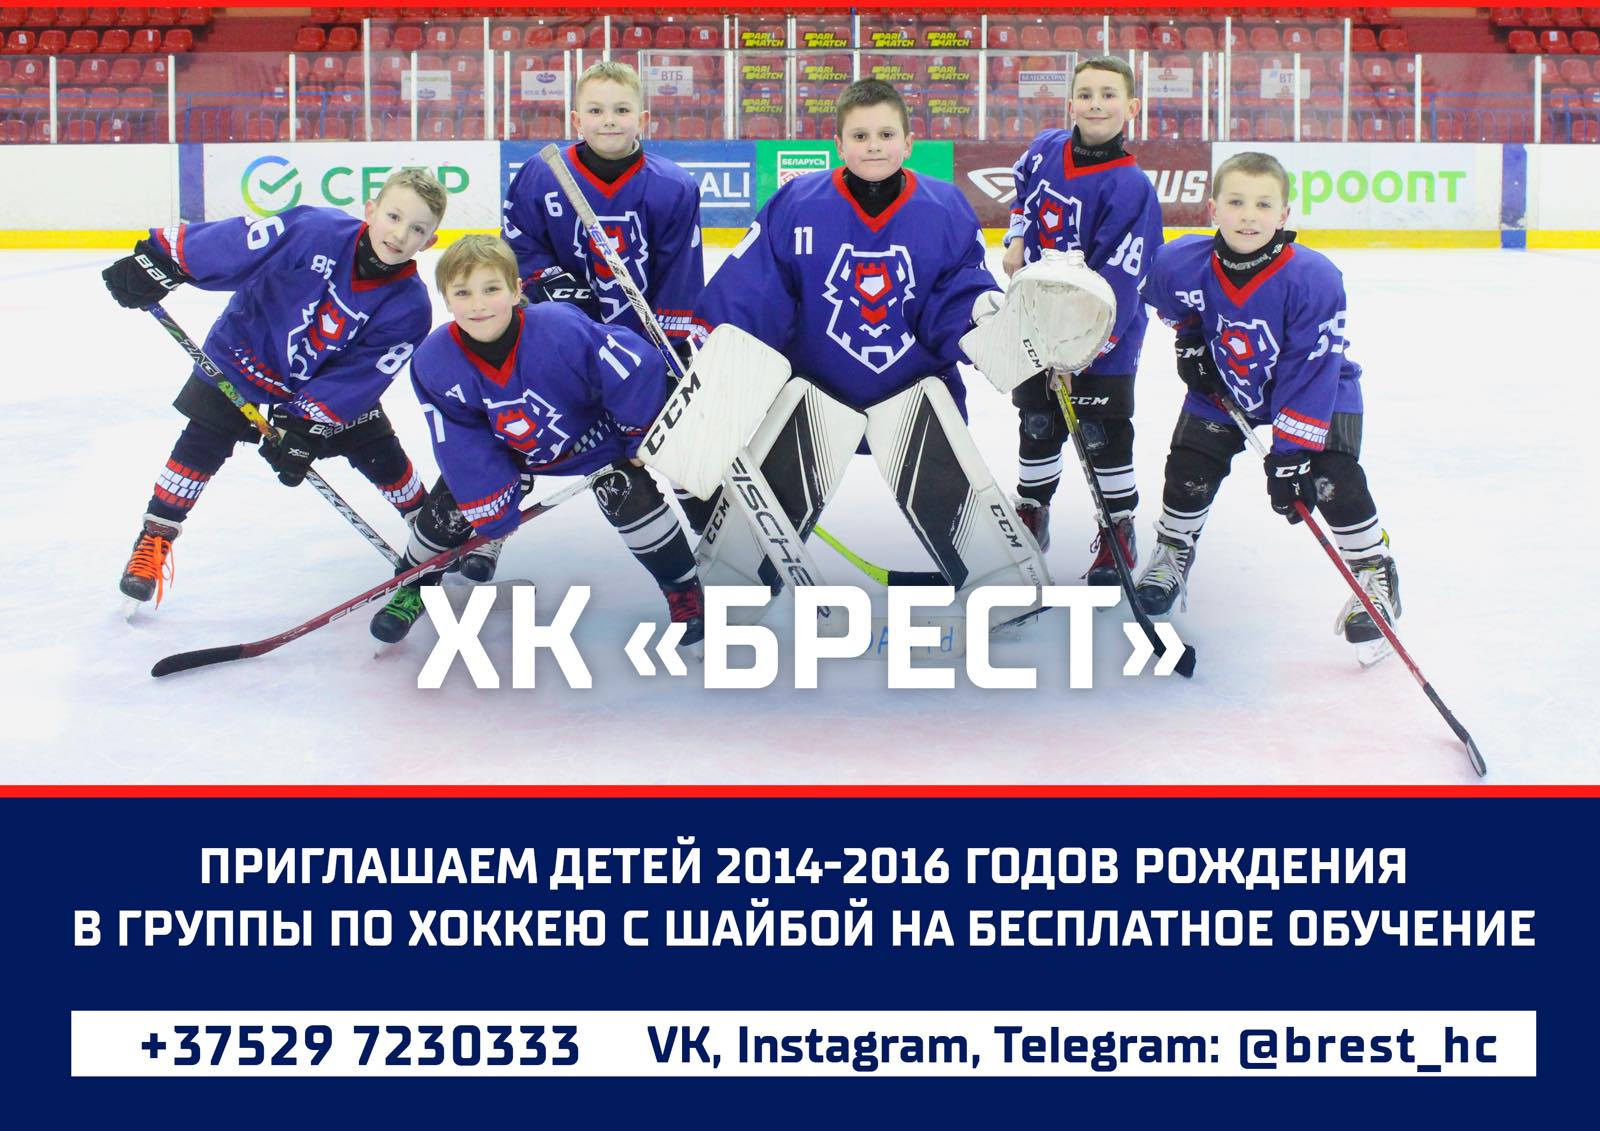 ХК "Брест" приглашает детей 2014 - 2016 годов рождения в группы по хоккею с шайбой на бесплатное обучение.